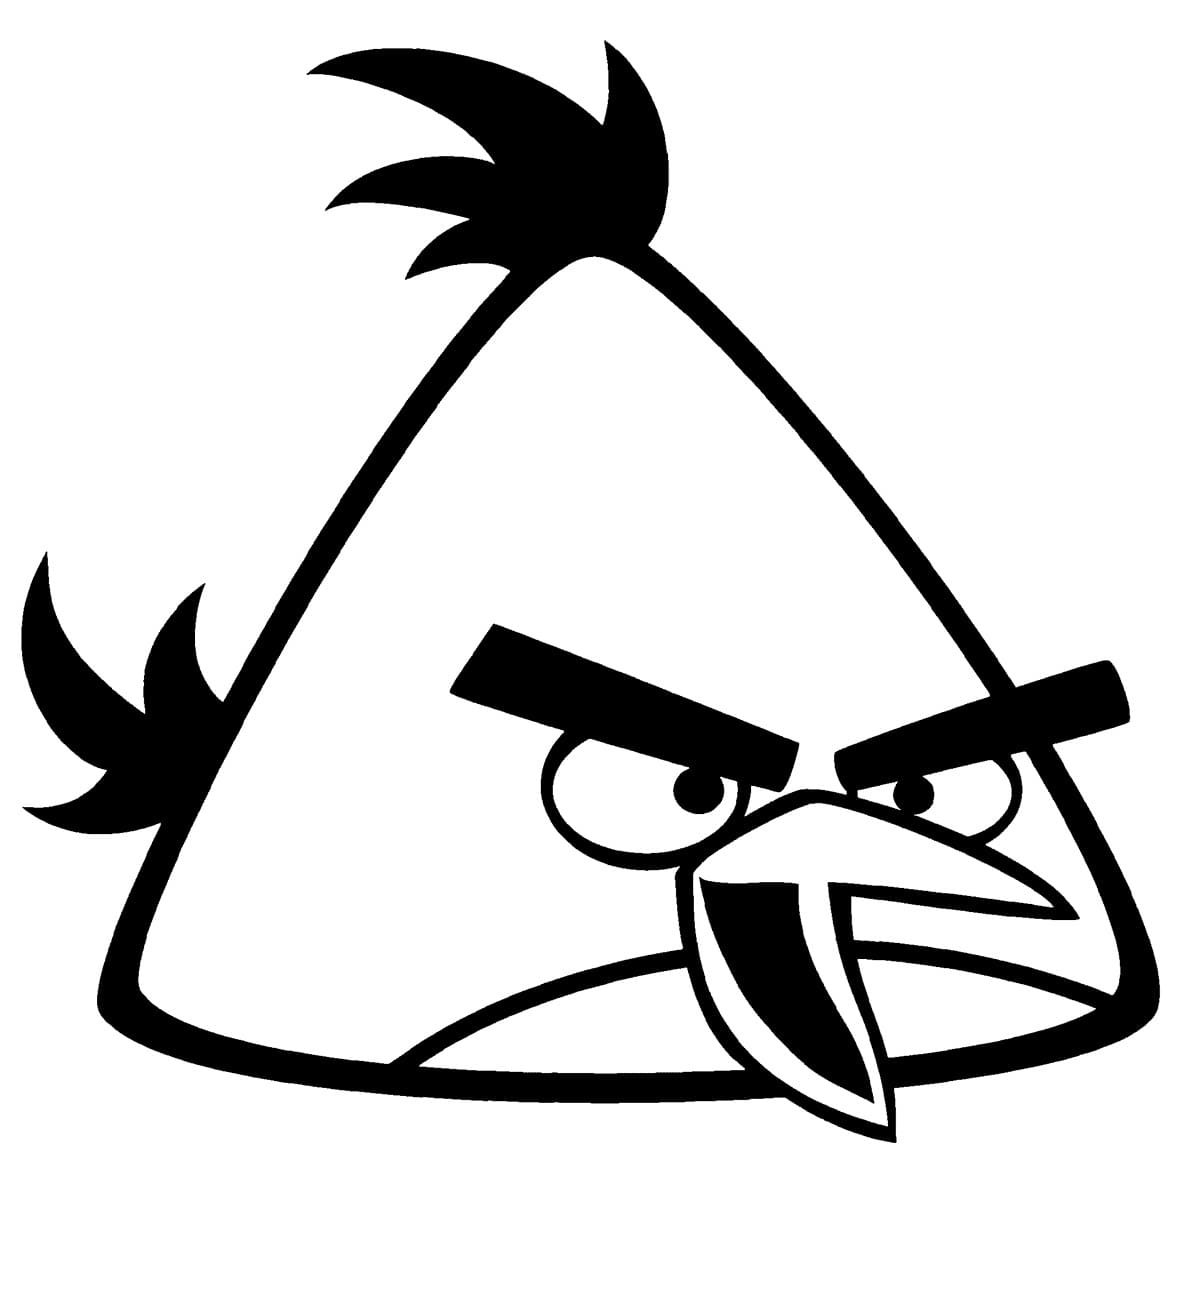 Målarbild Yellow Bird från Angry Birds